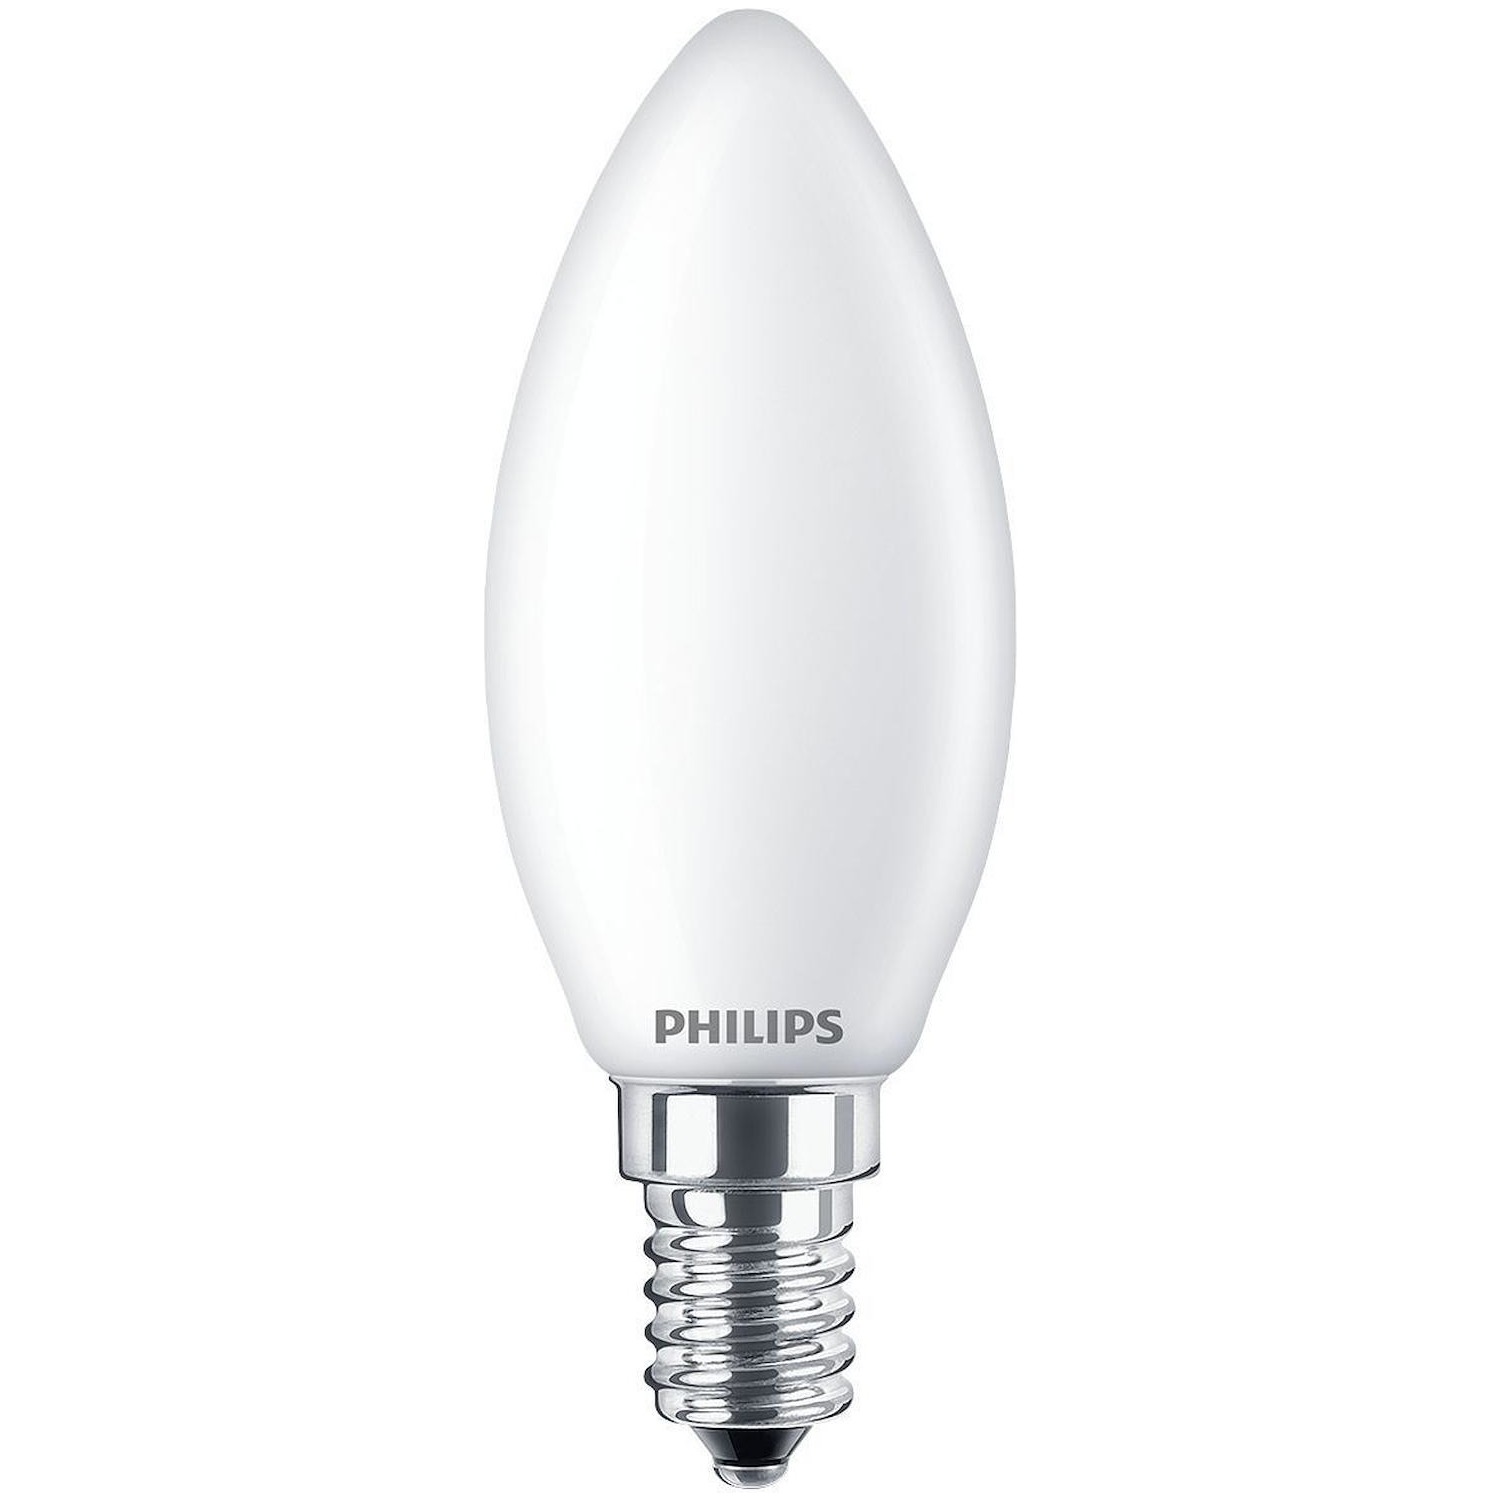 Immagine per Lampadina candela Philips satinata E14 60W CLD da DIMOStore